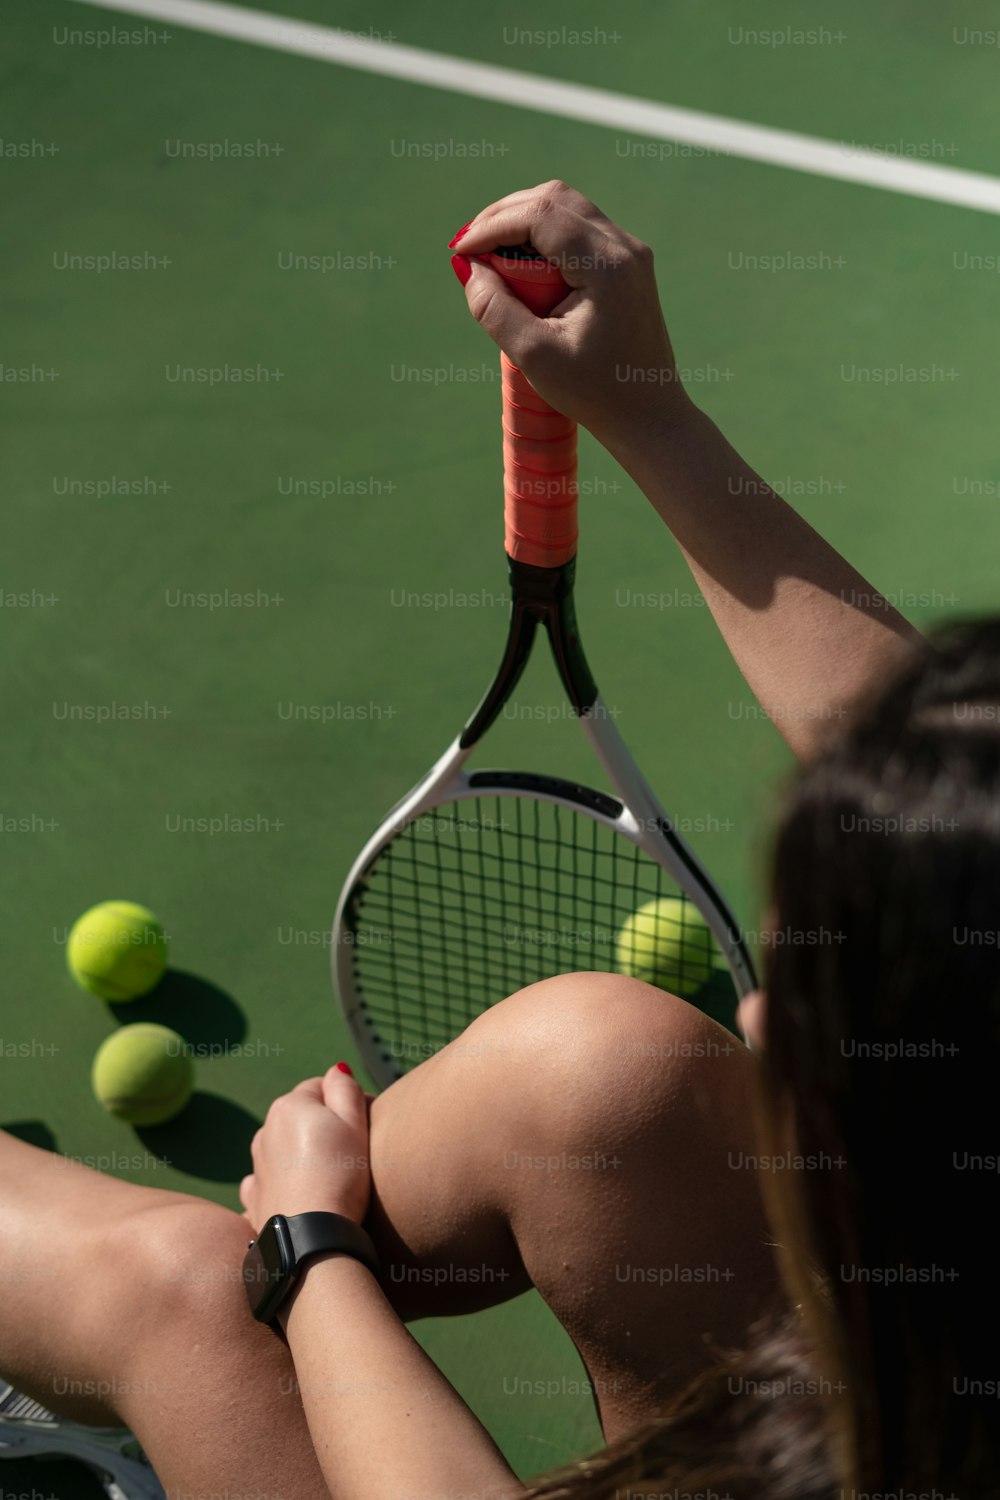 테니스 코트 위에서 테니스 라켓을 들고 있는 여자